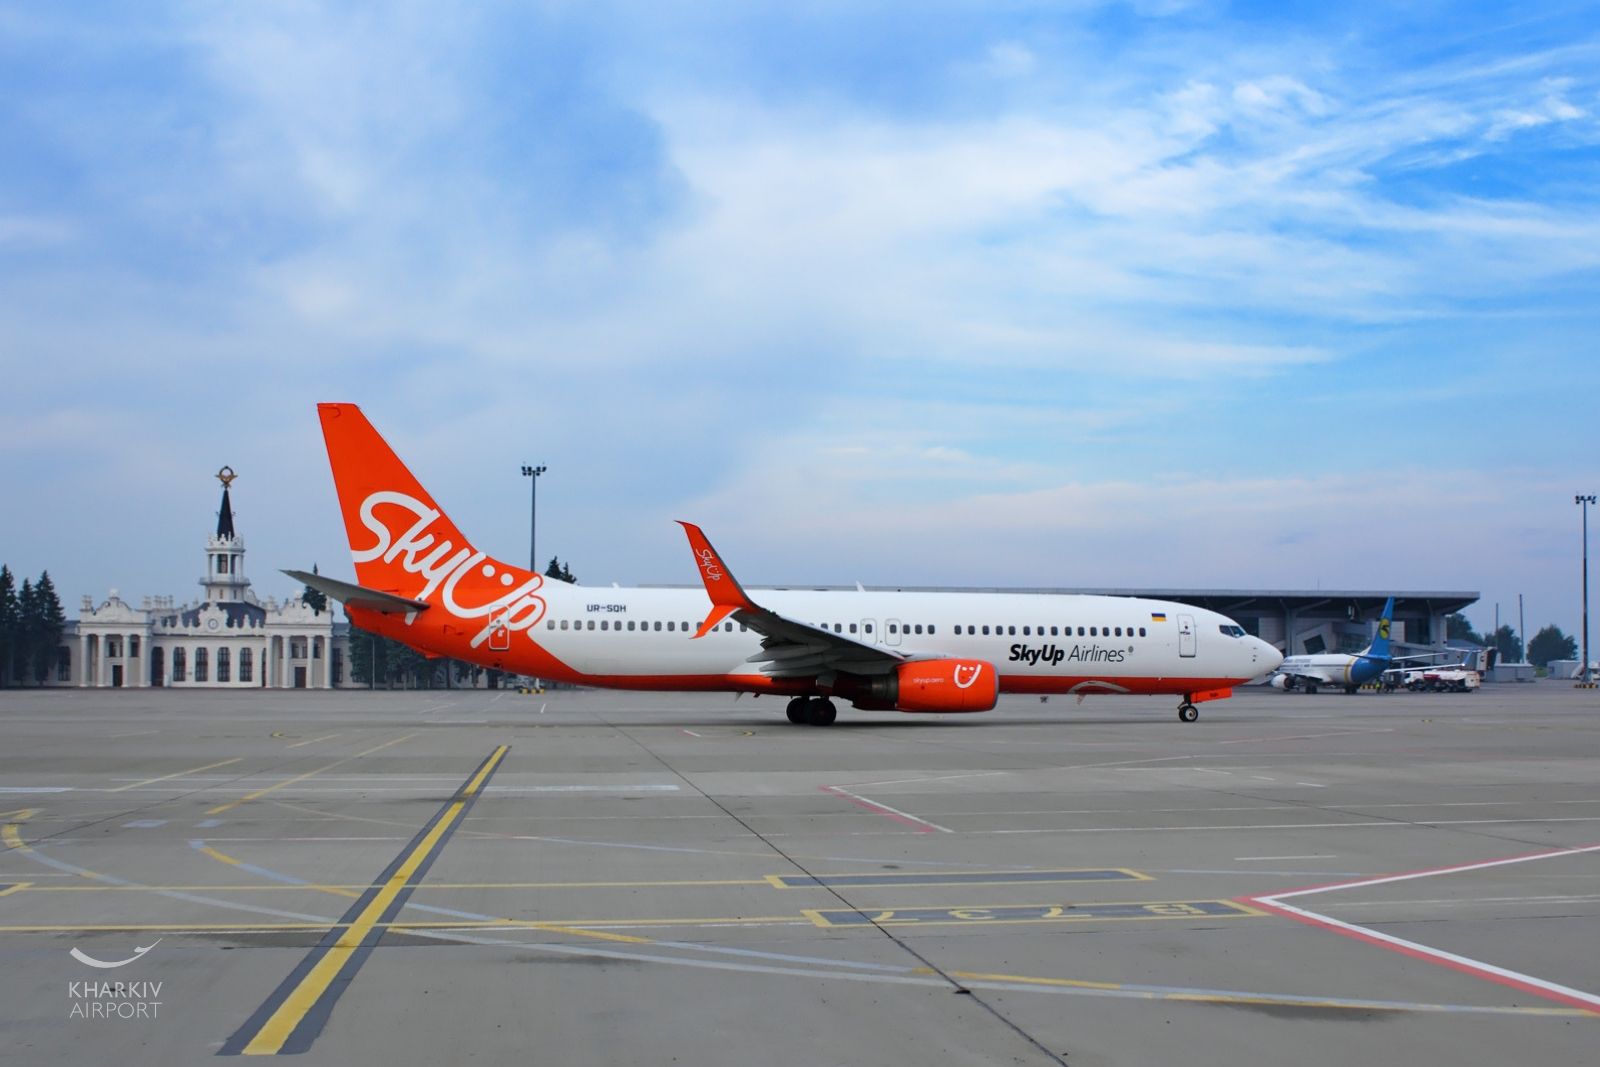 SkyUp Airlines возобновляет перелеты из харьковского аэропорта, управляемого компанией Ярославского, в Киев, Одессу и Львов